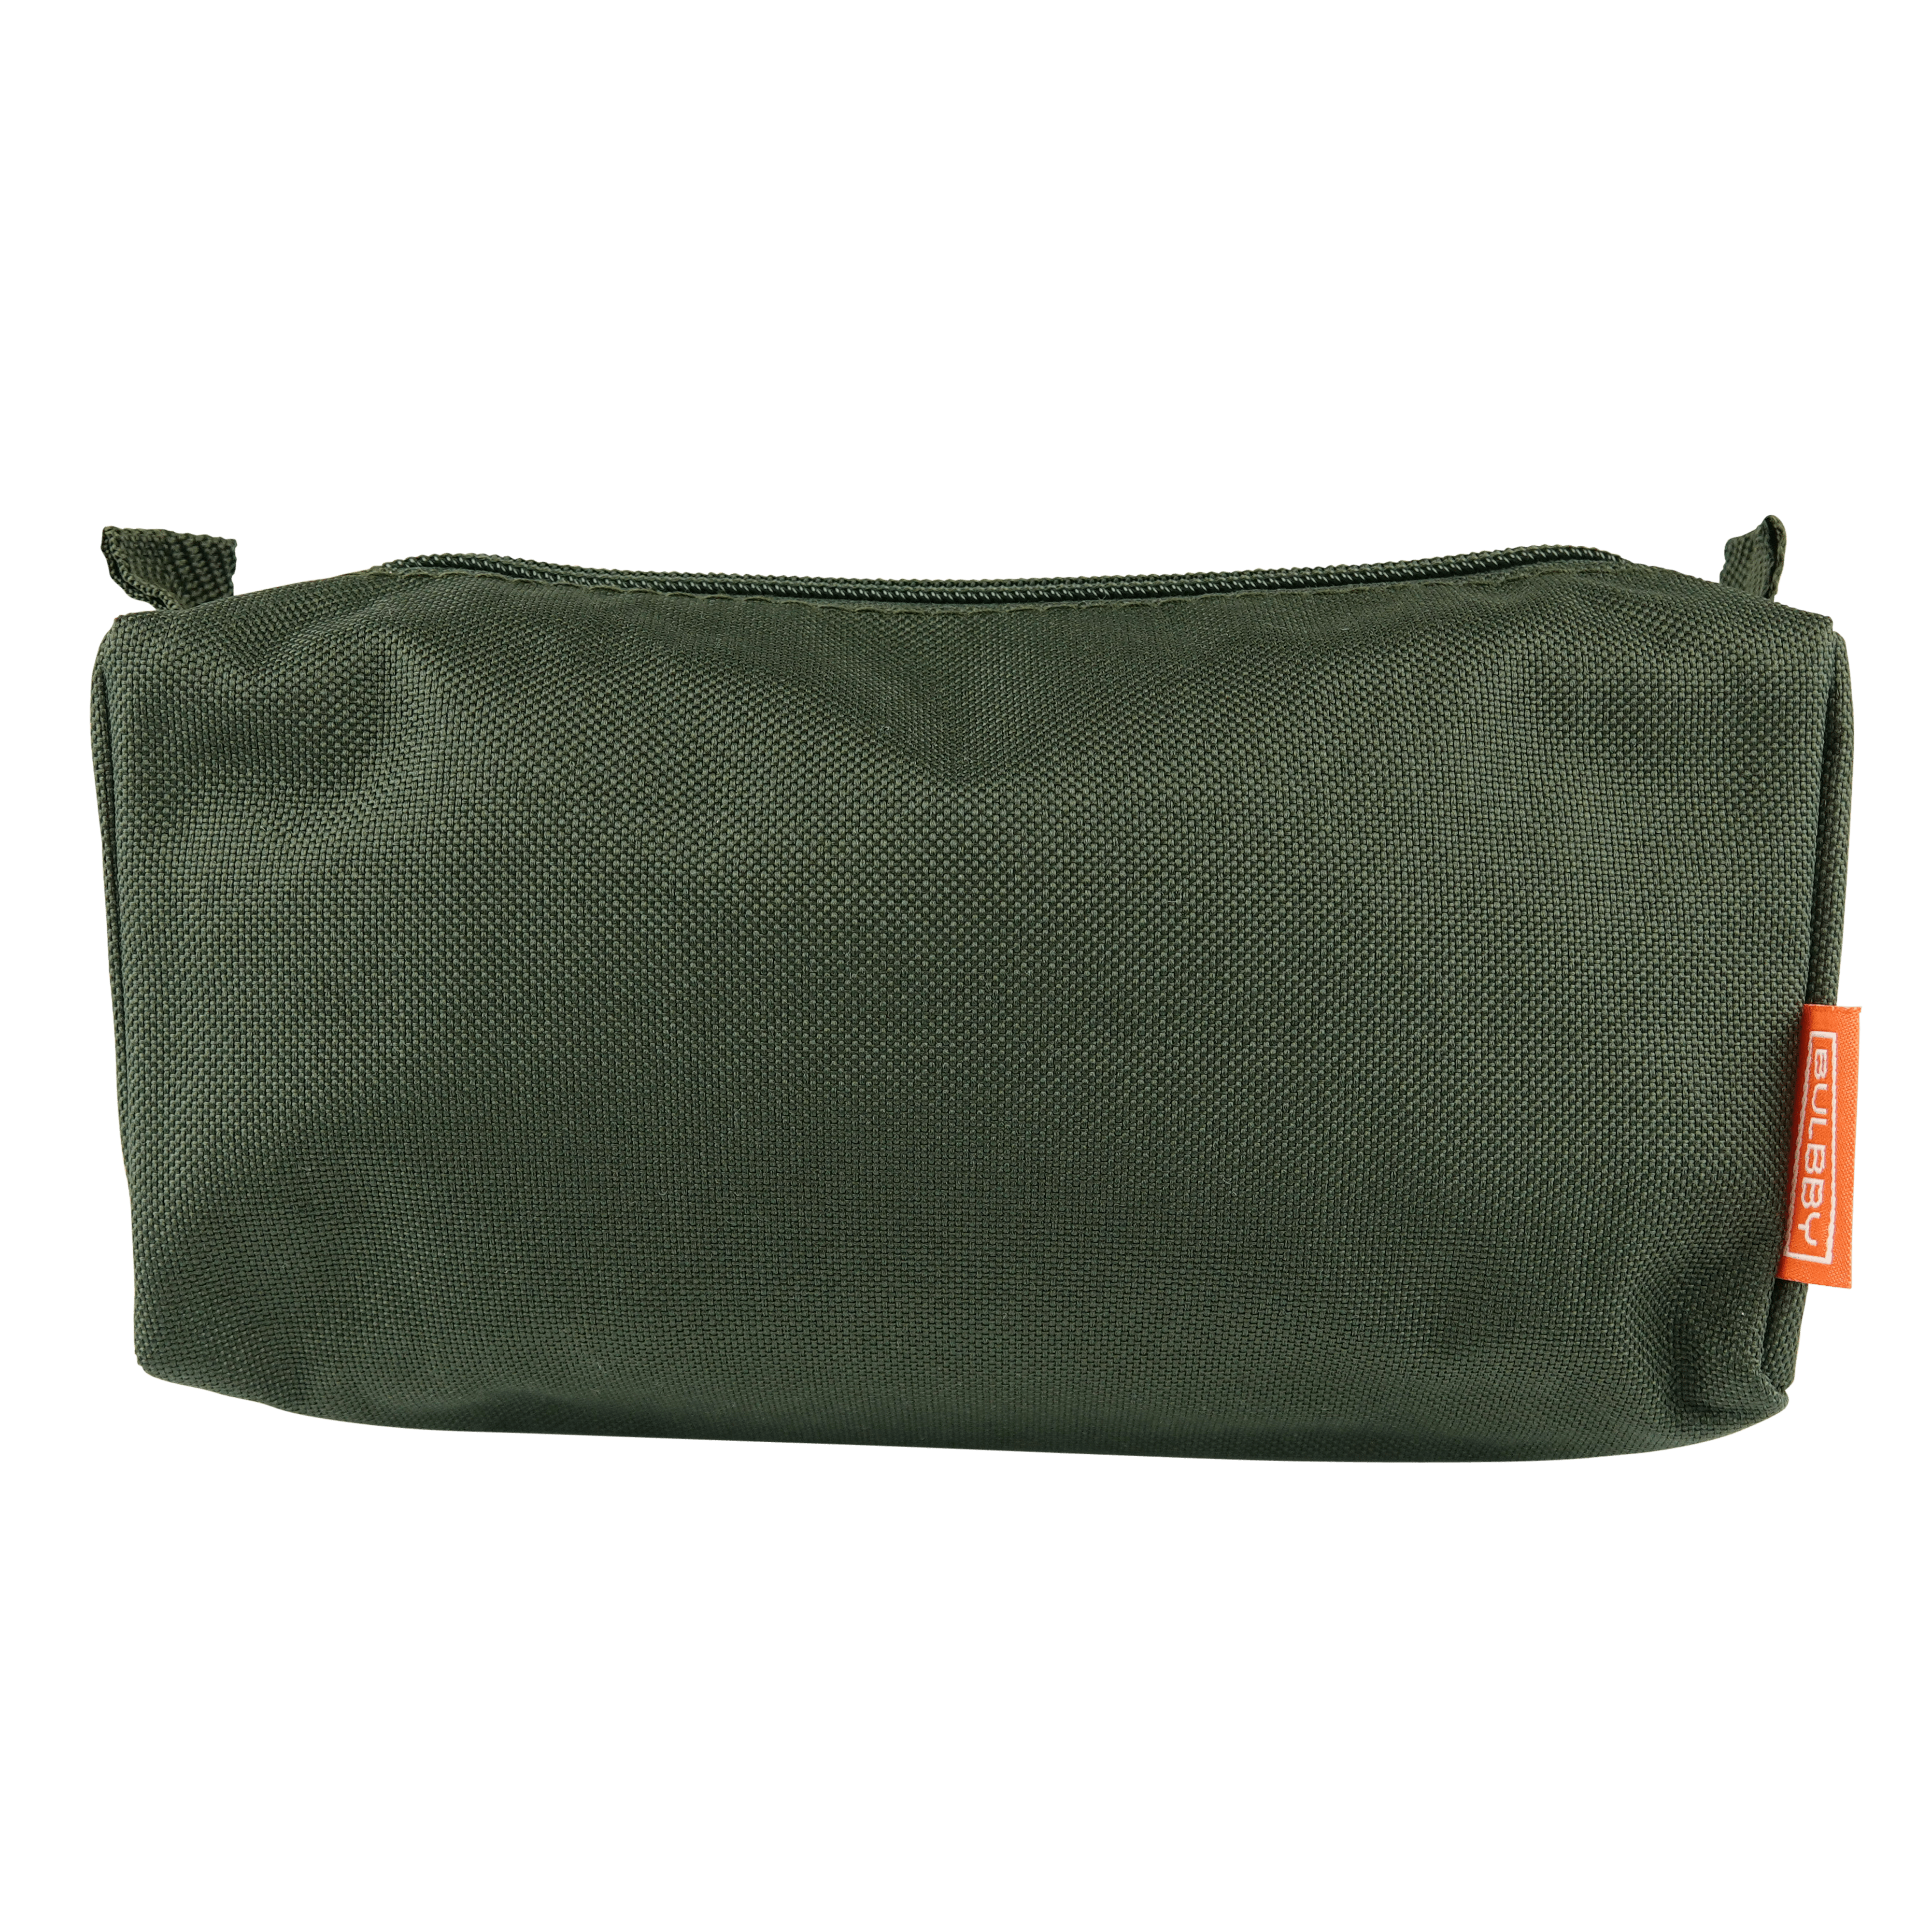 Pencil case armygreen